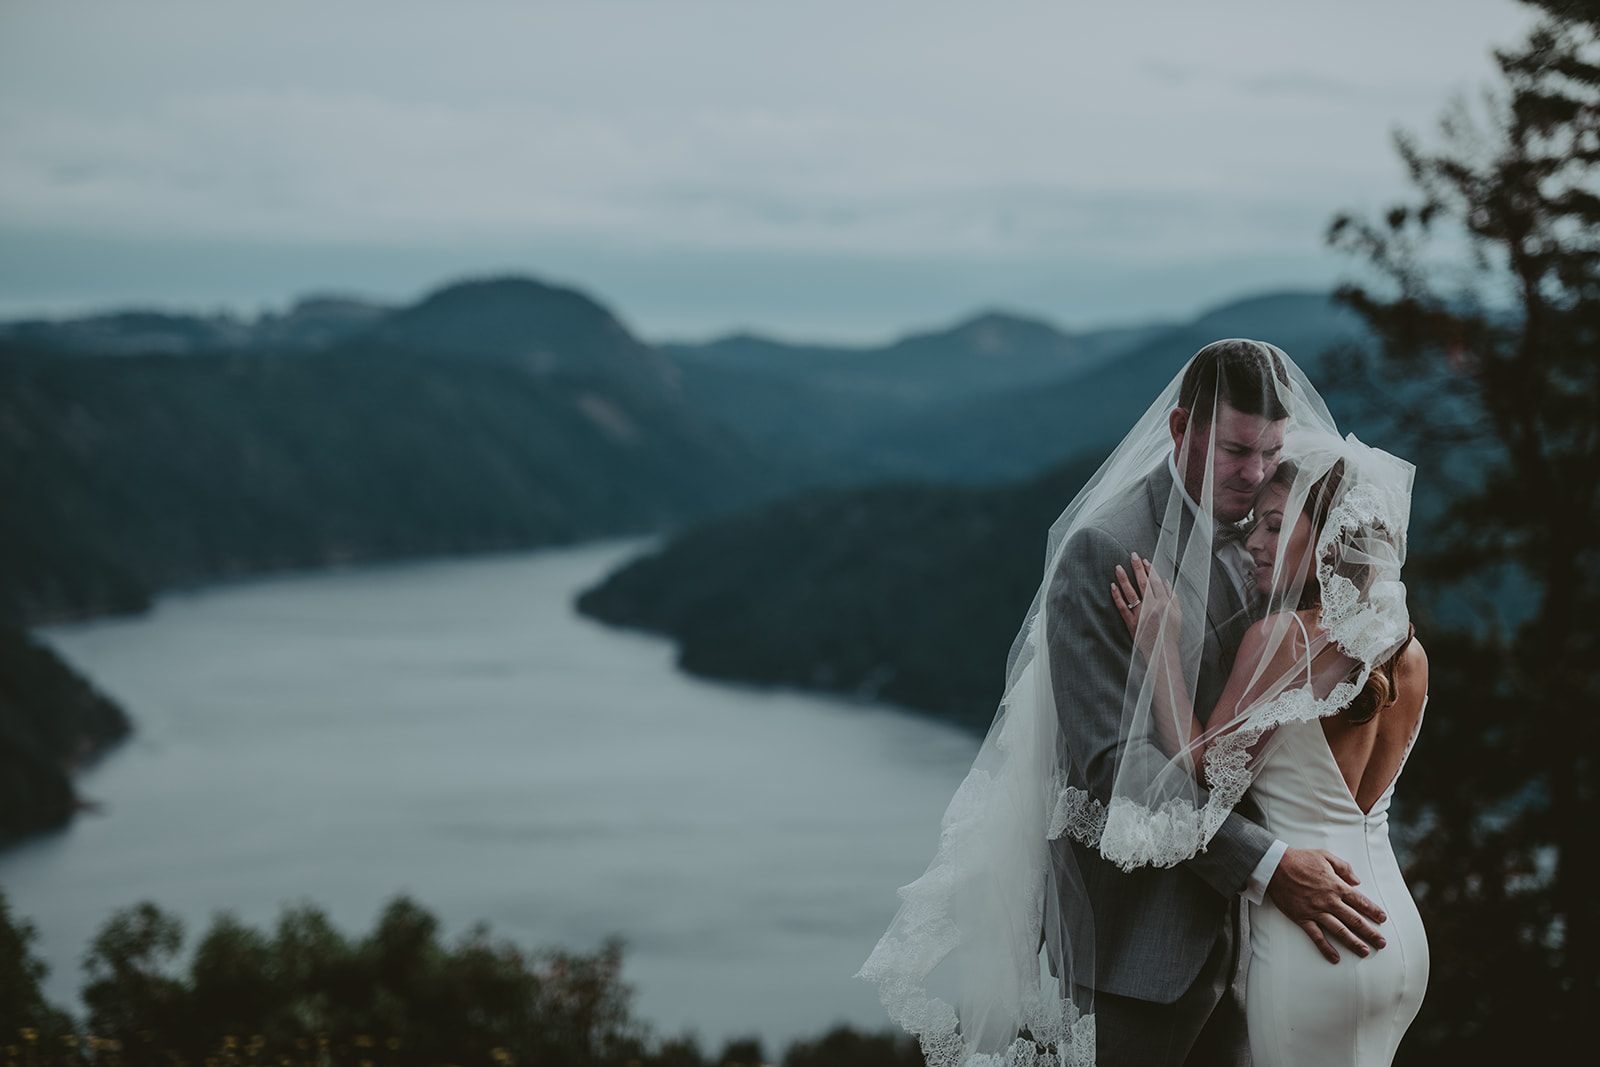 creative wedding photography, Vancouver Island wedding photography